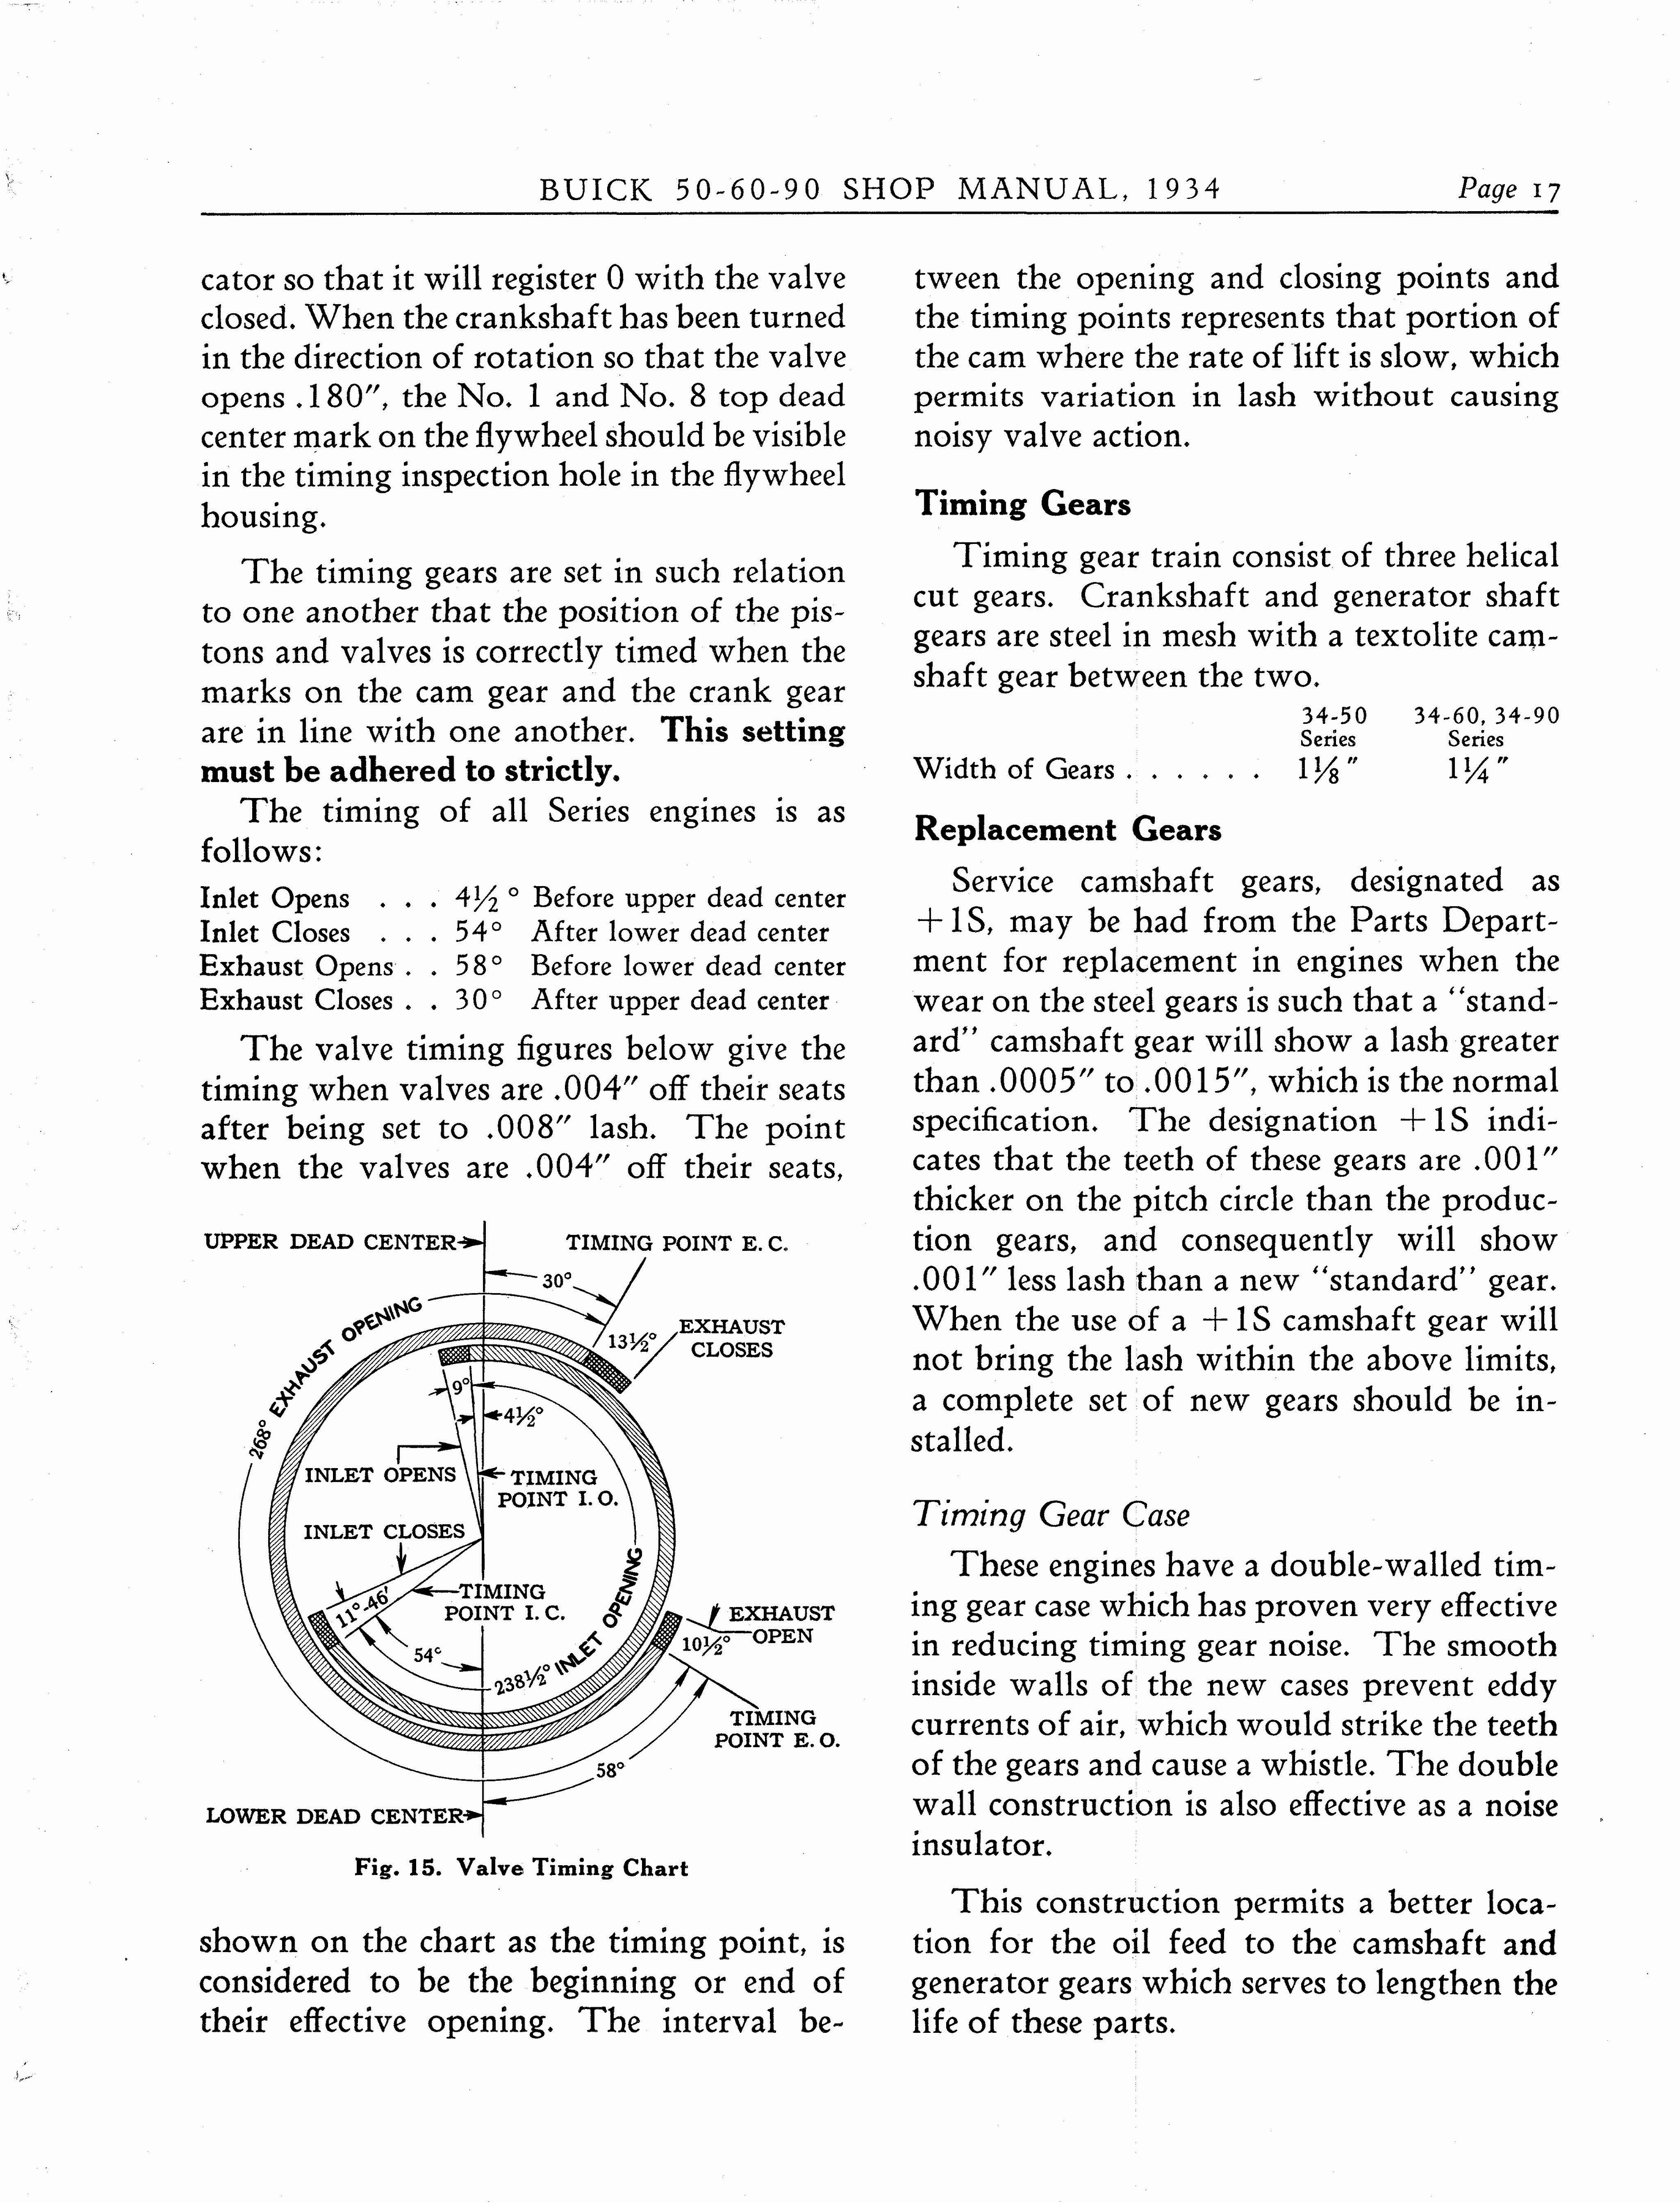 n_1934 Buick Series 50-60-90 Shop Manual_Page_018.jpg